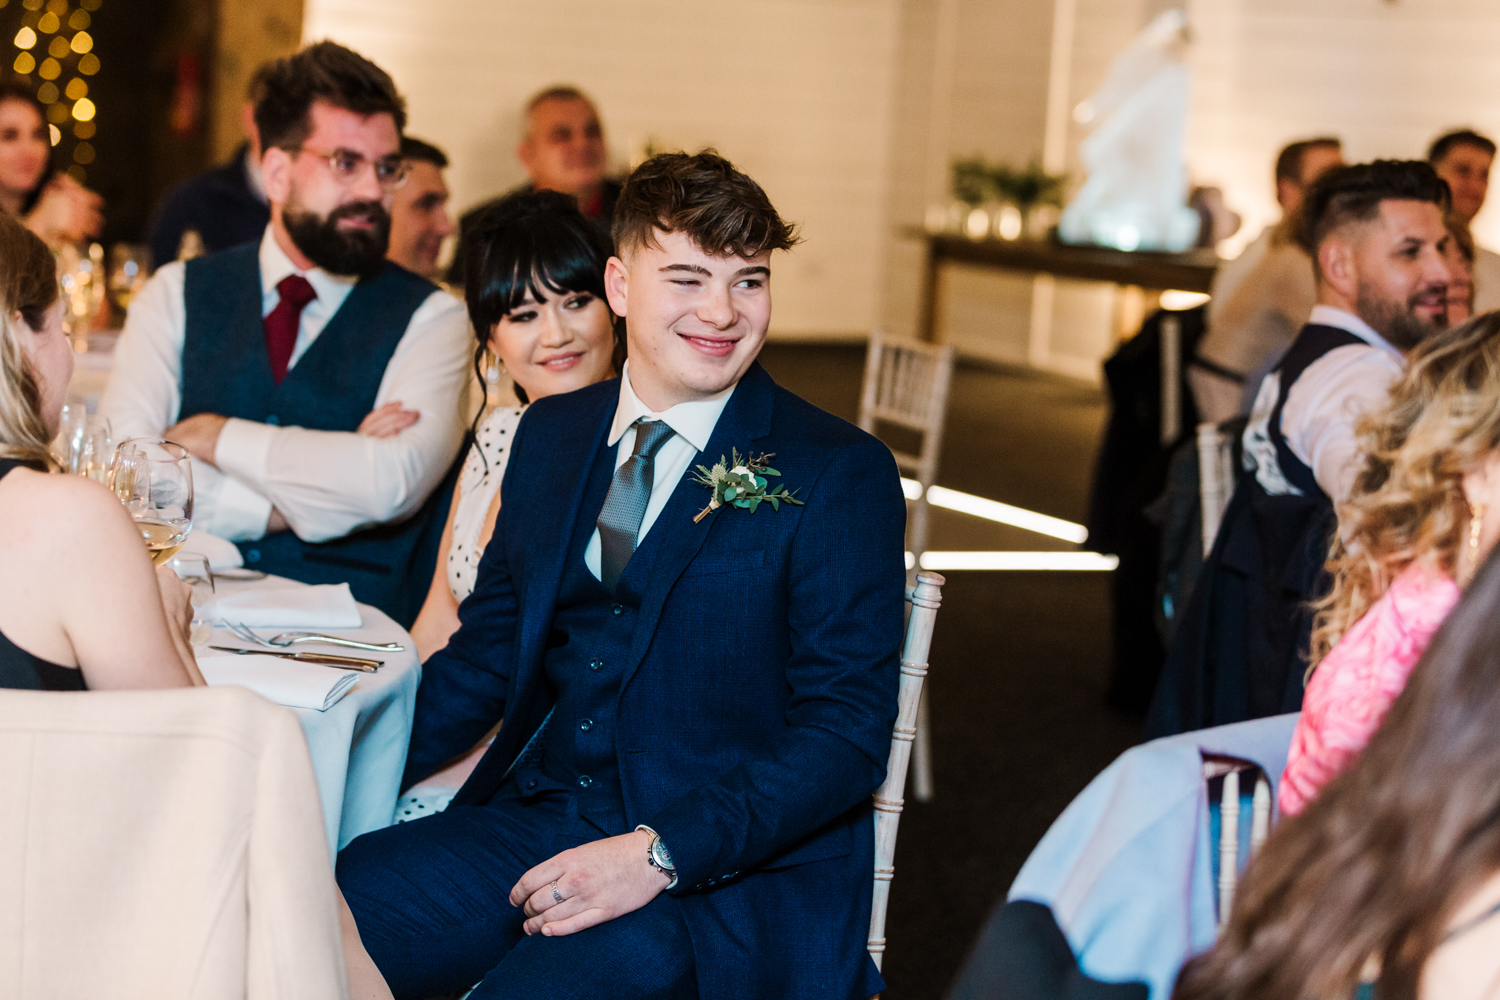 Wedding Photographers Leeds